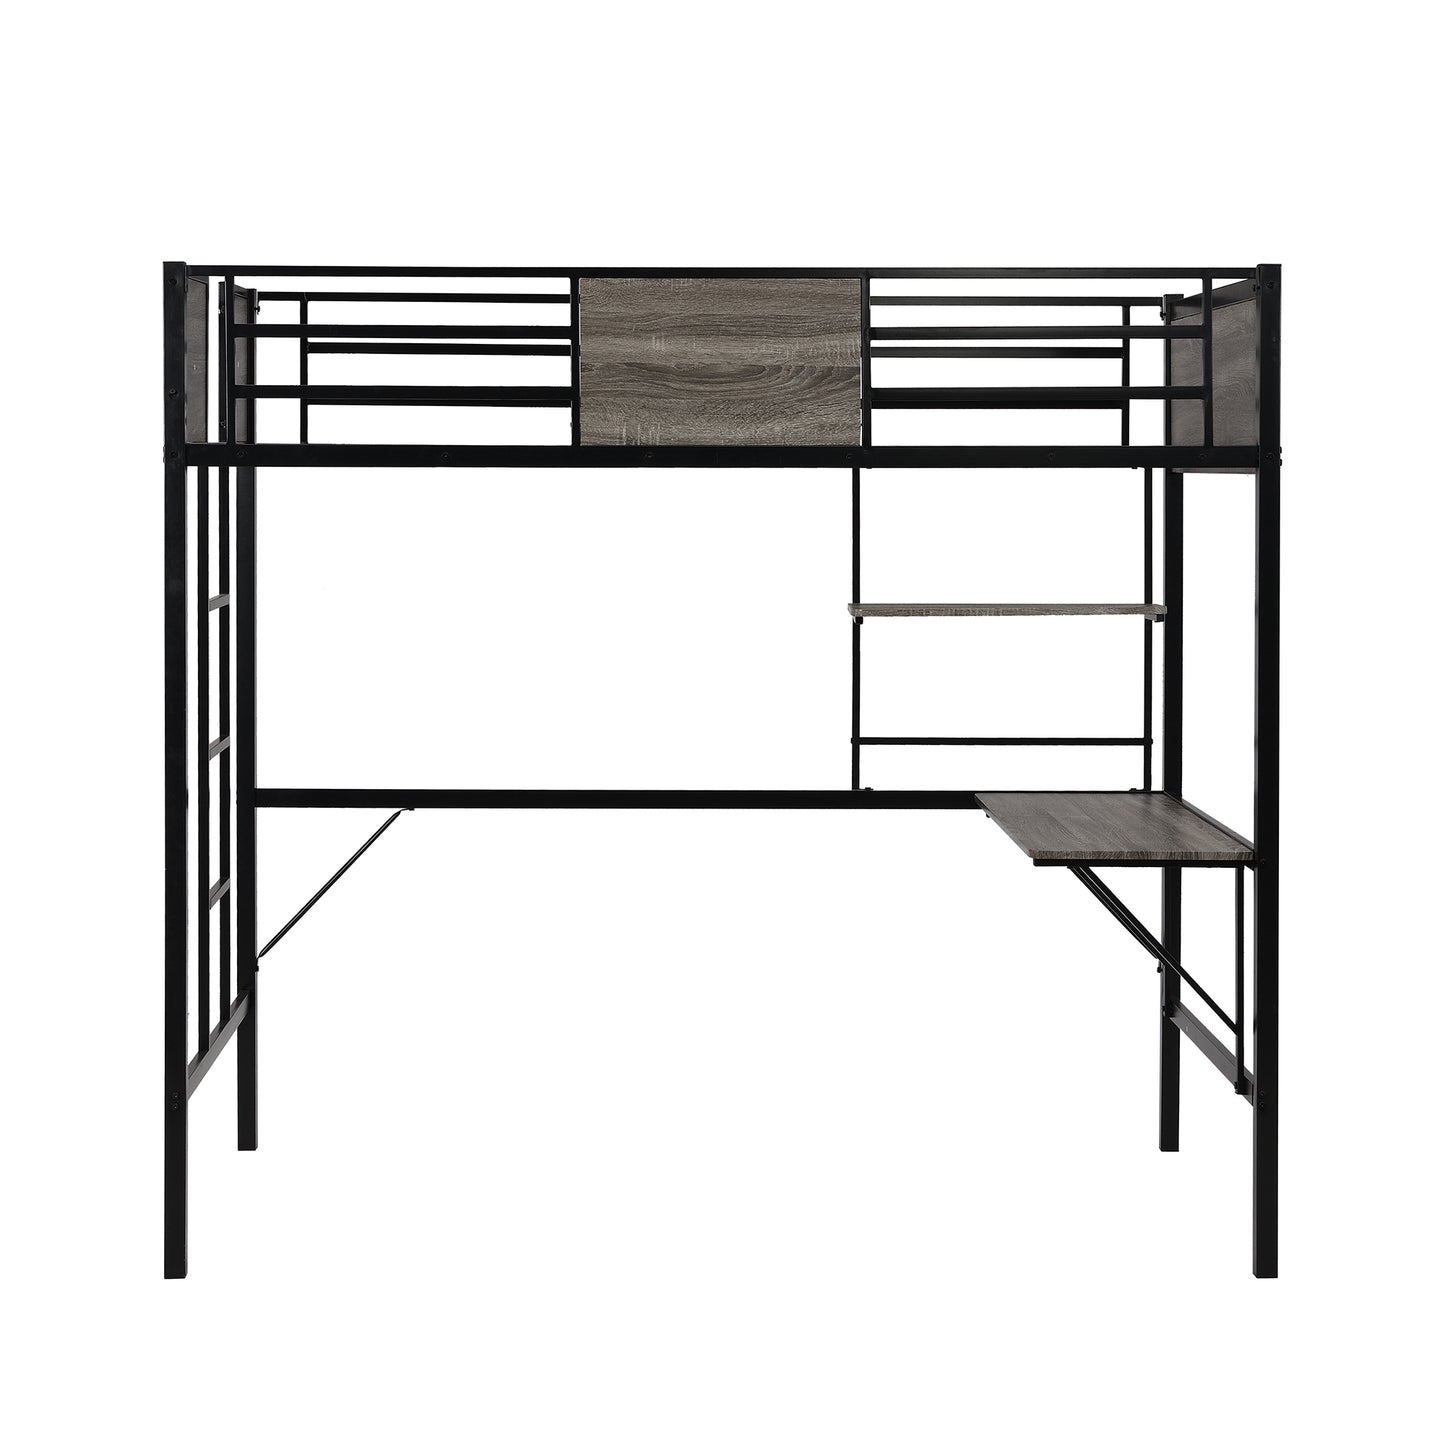 Twin Loft BEd w/ Desk & Shelf